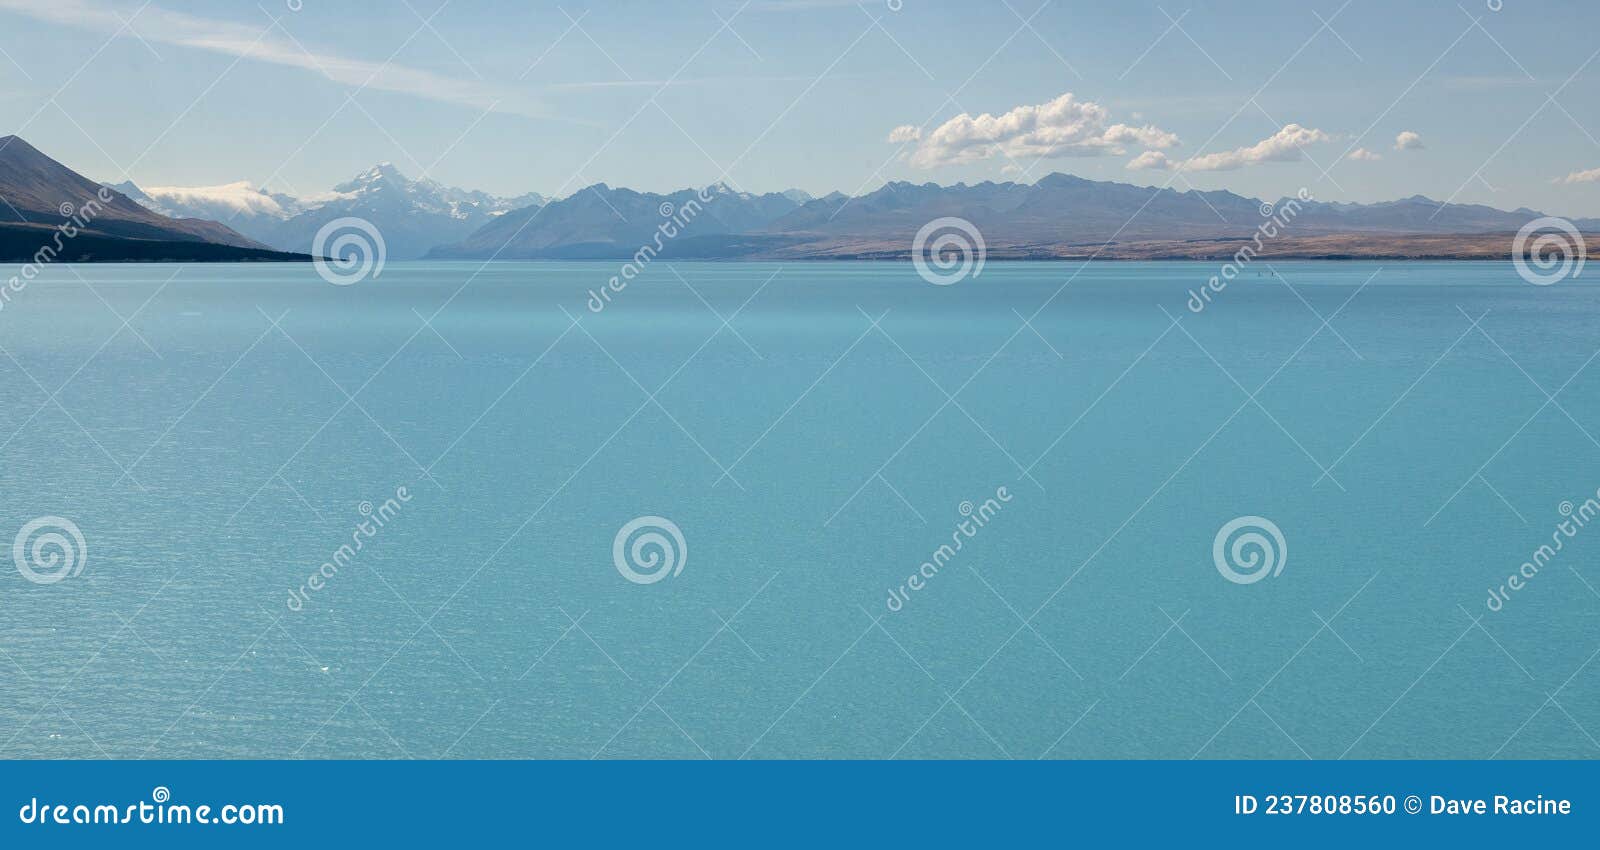 Blue lake in New Zealand stock photo. Image of lake - 237808560